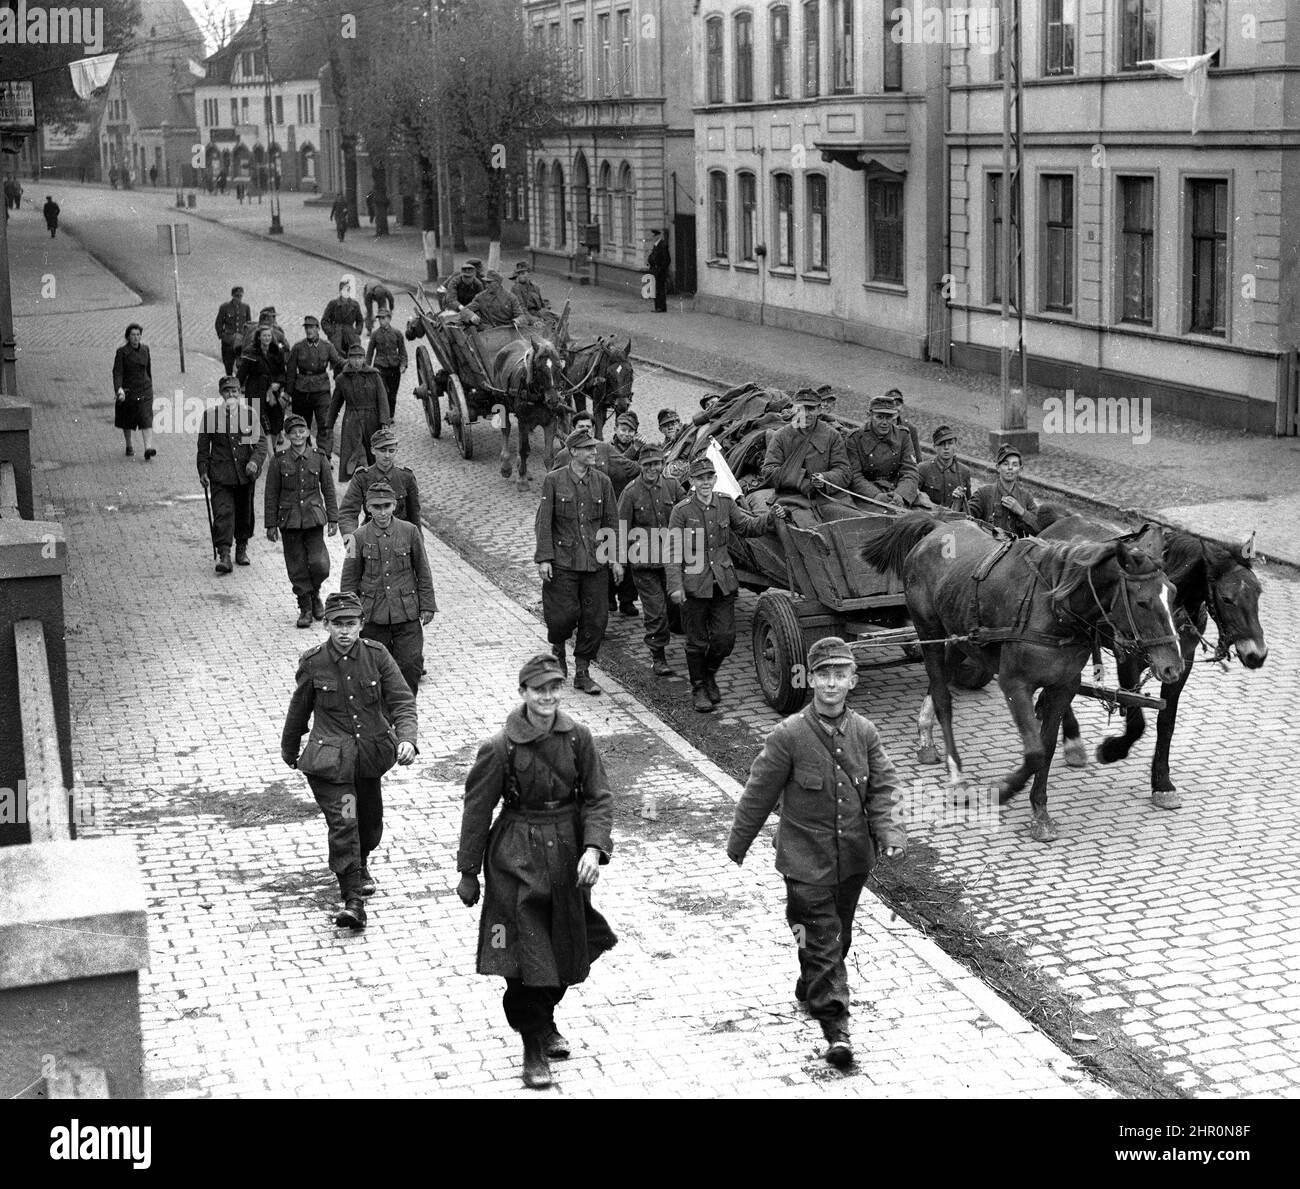 Deutschland 2. Weltkrieg 1945. Soldaten der deutschen Armee die meisten von ihnen sind sehr jung und lächeln, als sie mit einer weißen Kapitulationsflagge auf ihrem Pferd und Wagen besiegt nach Hause zurückkehren. Von einigen der Gebäude sind auch weiße Fahnen drapiert zu sehen. Stockfoto